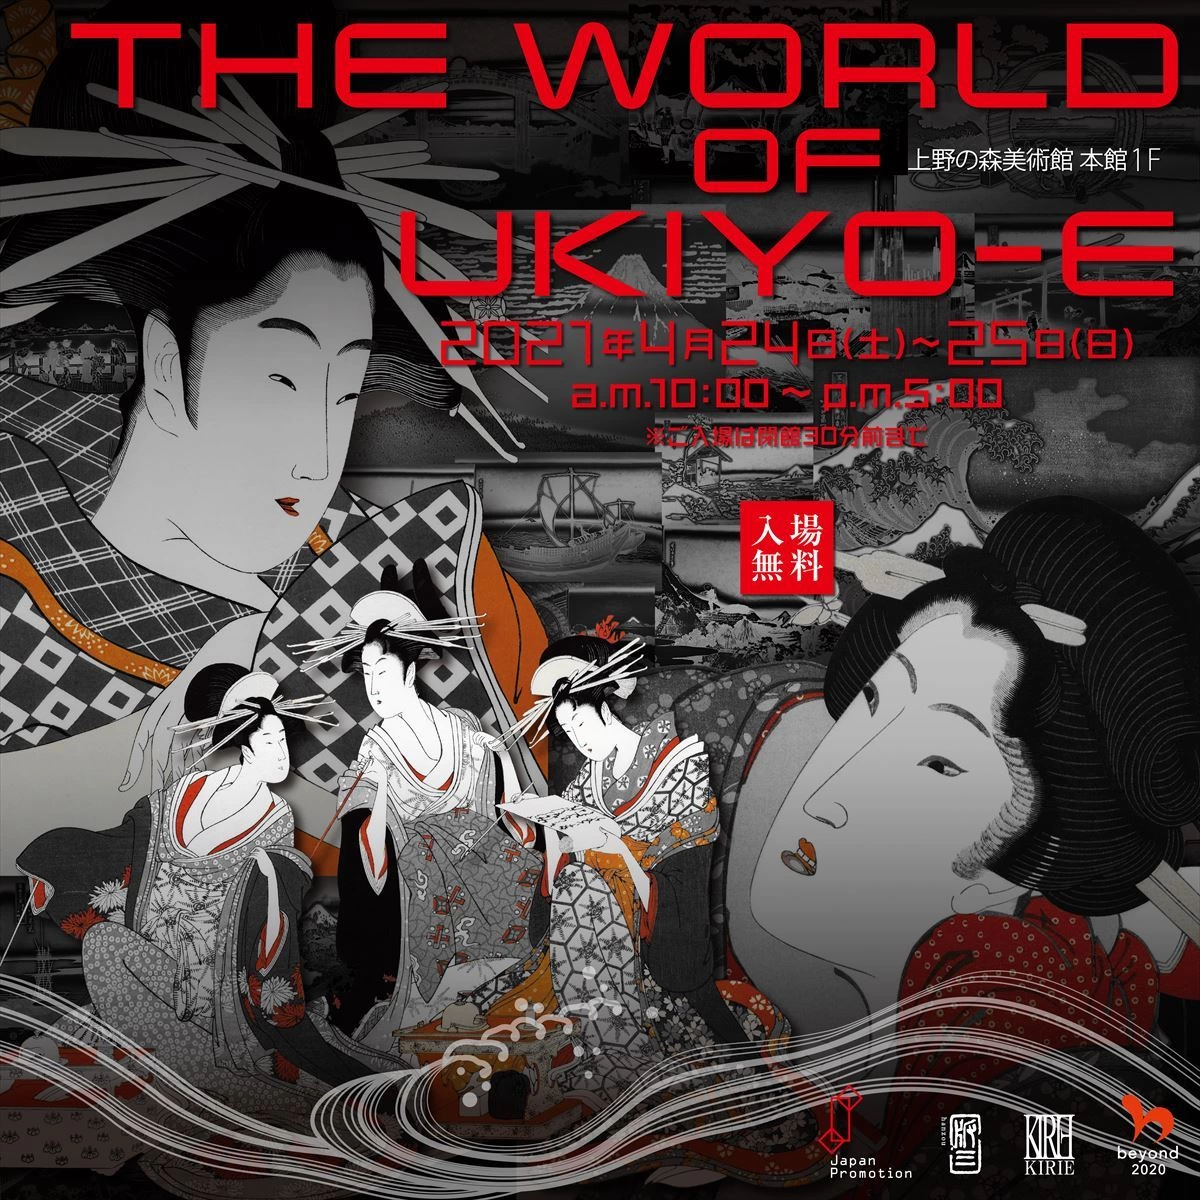 THE WORLD OF UKIYO-E